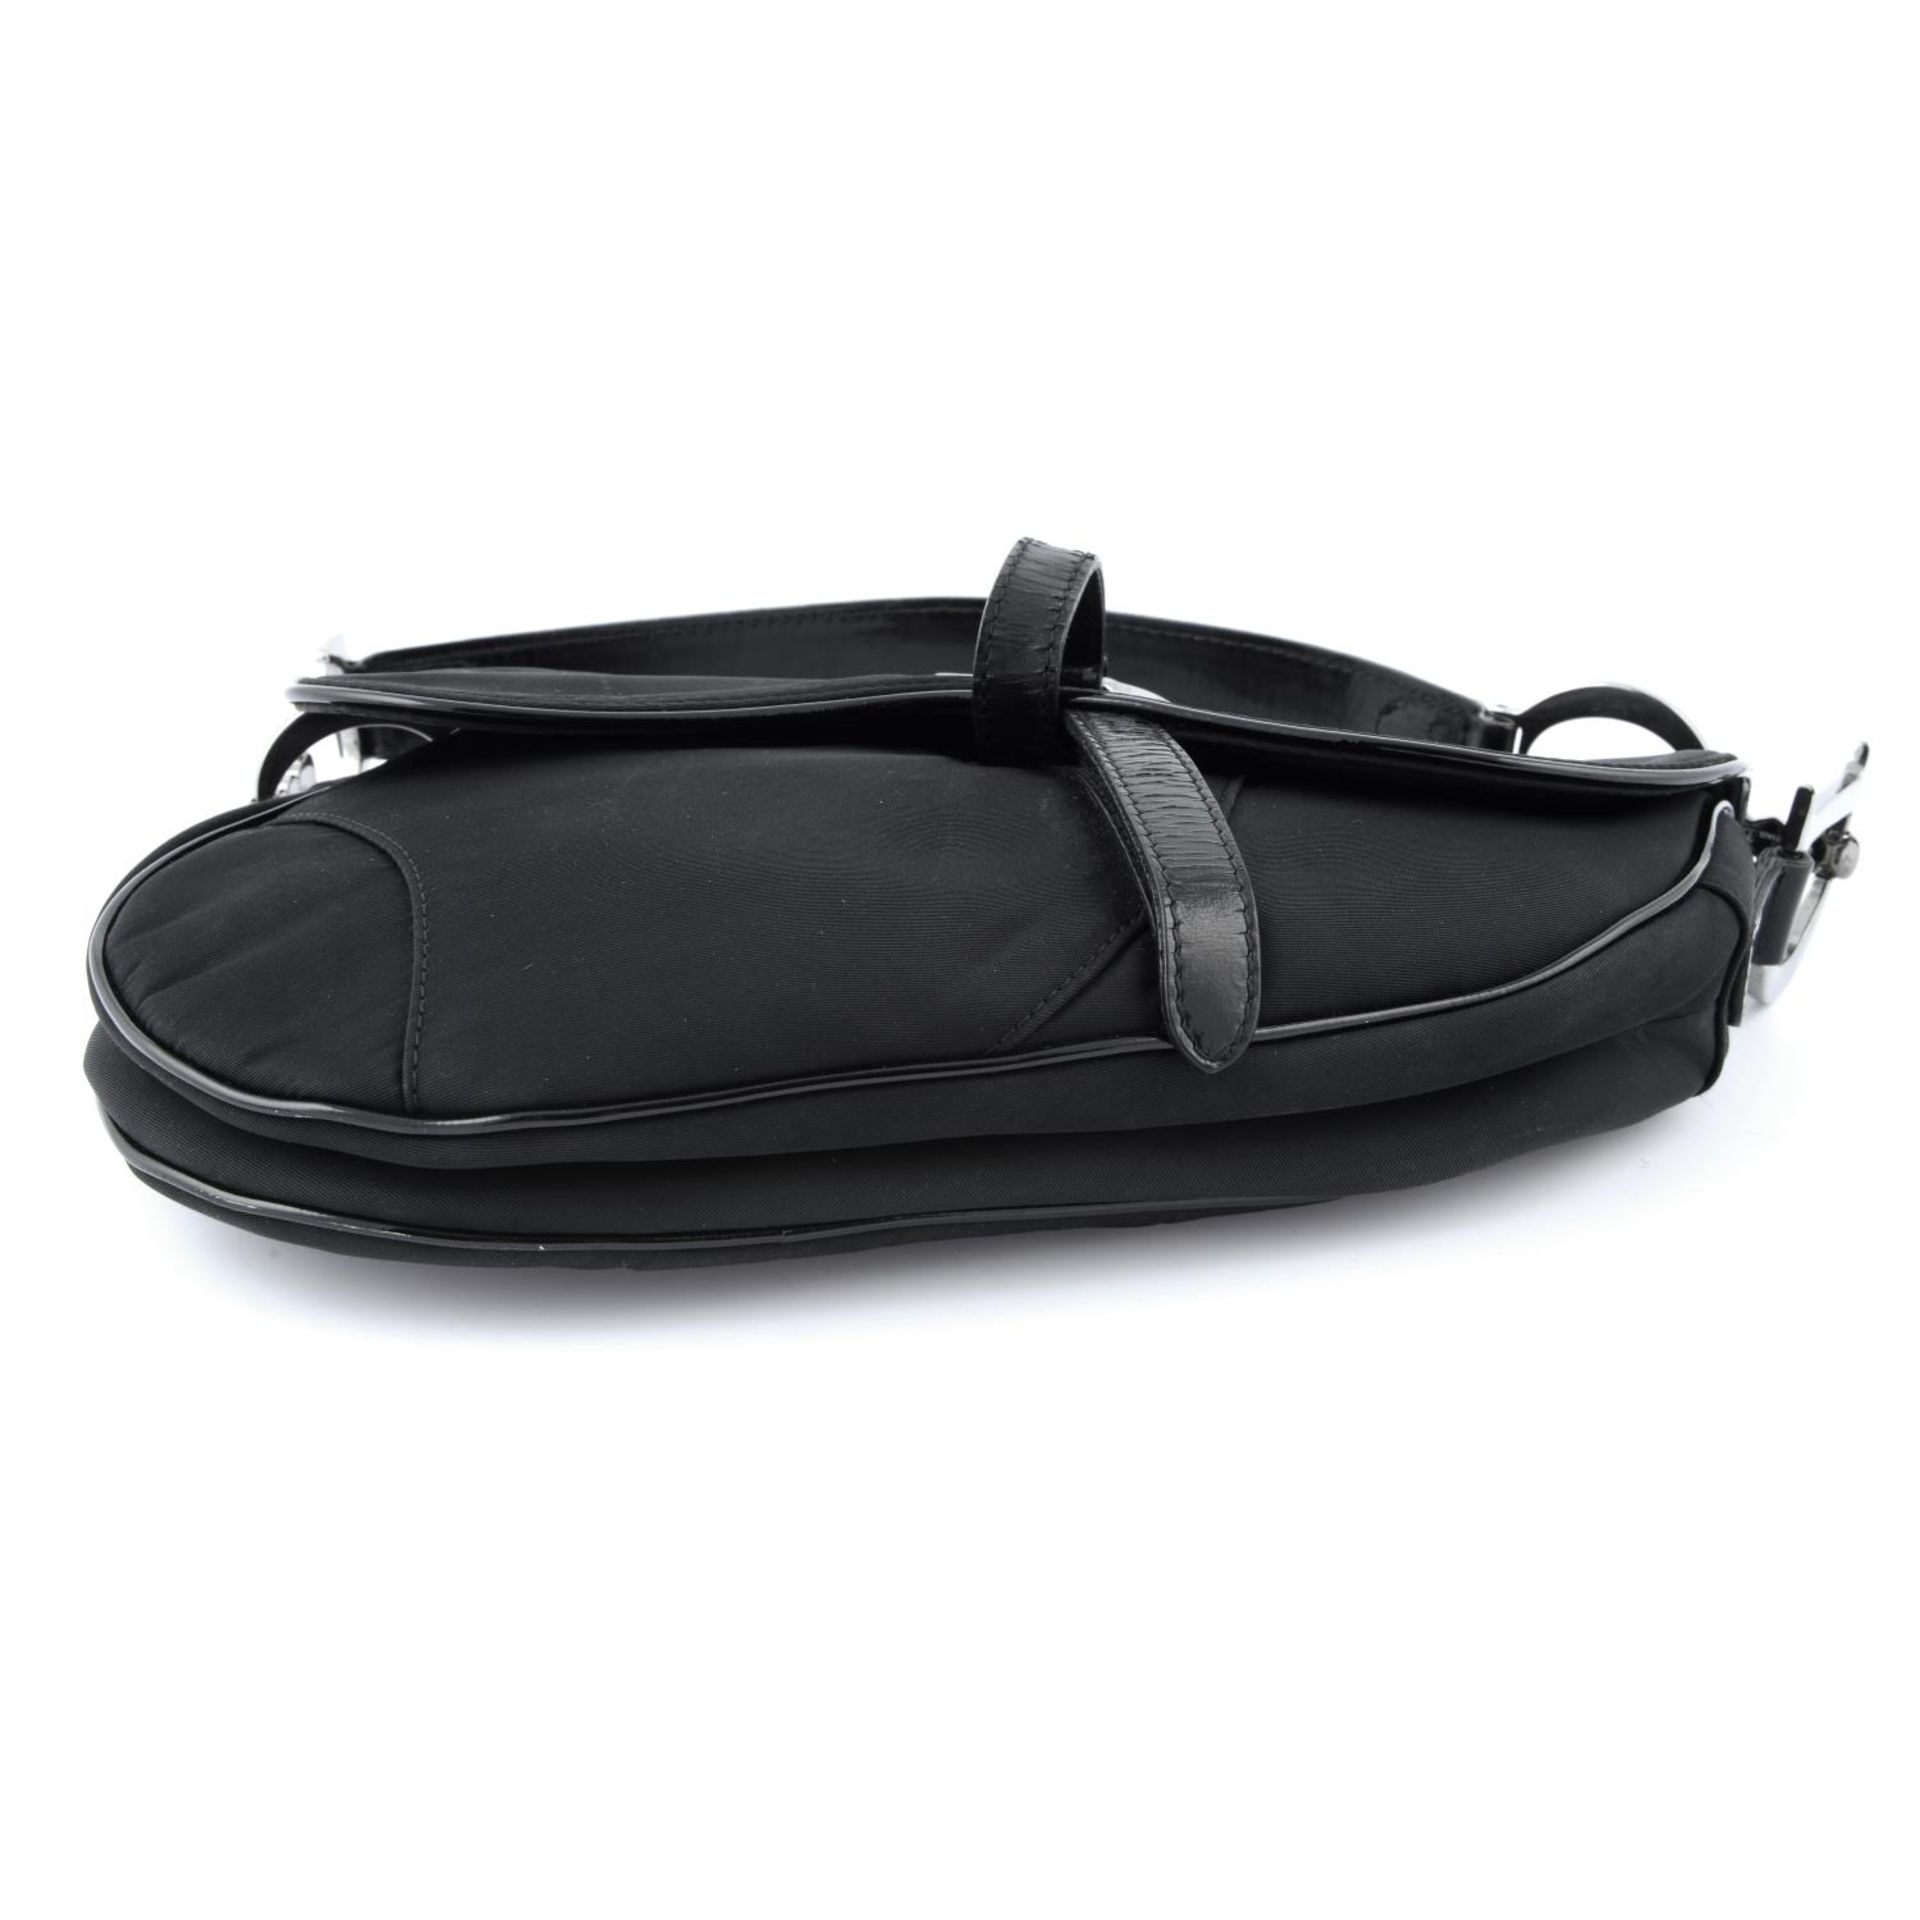 CHRISTIAN DIOR - a black nylon saddle handbag. - Image 5 of 5